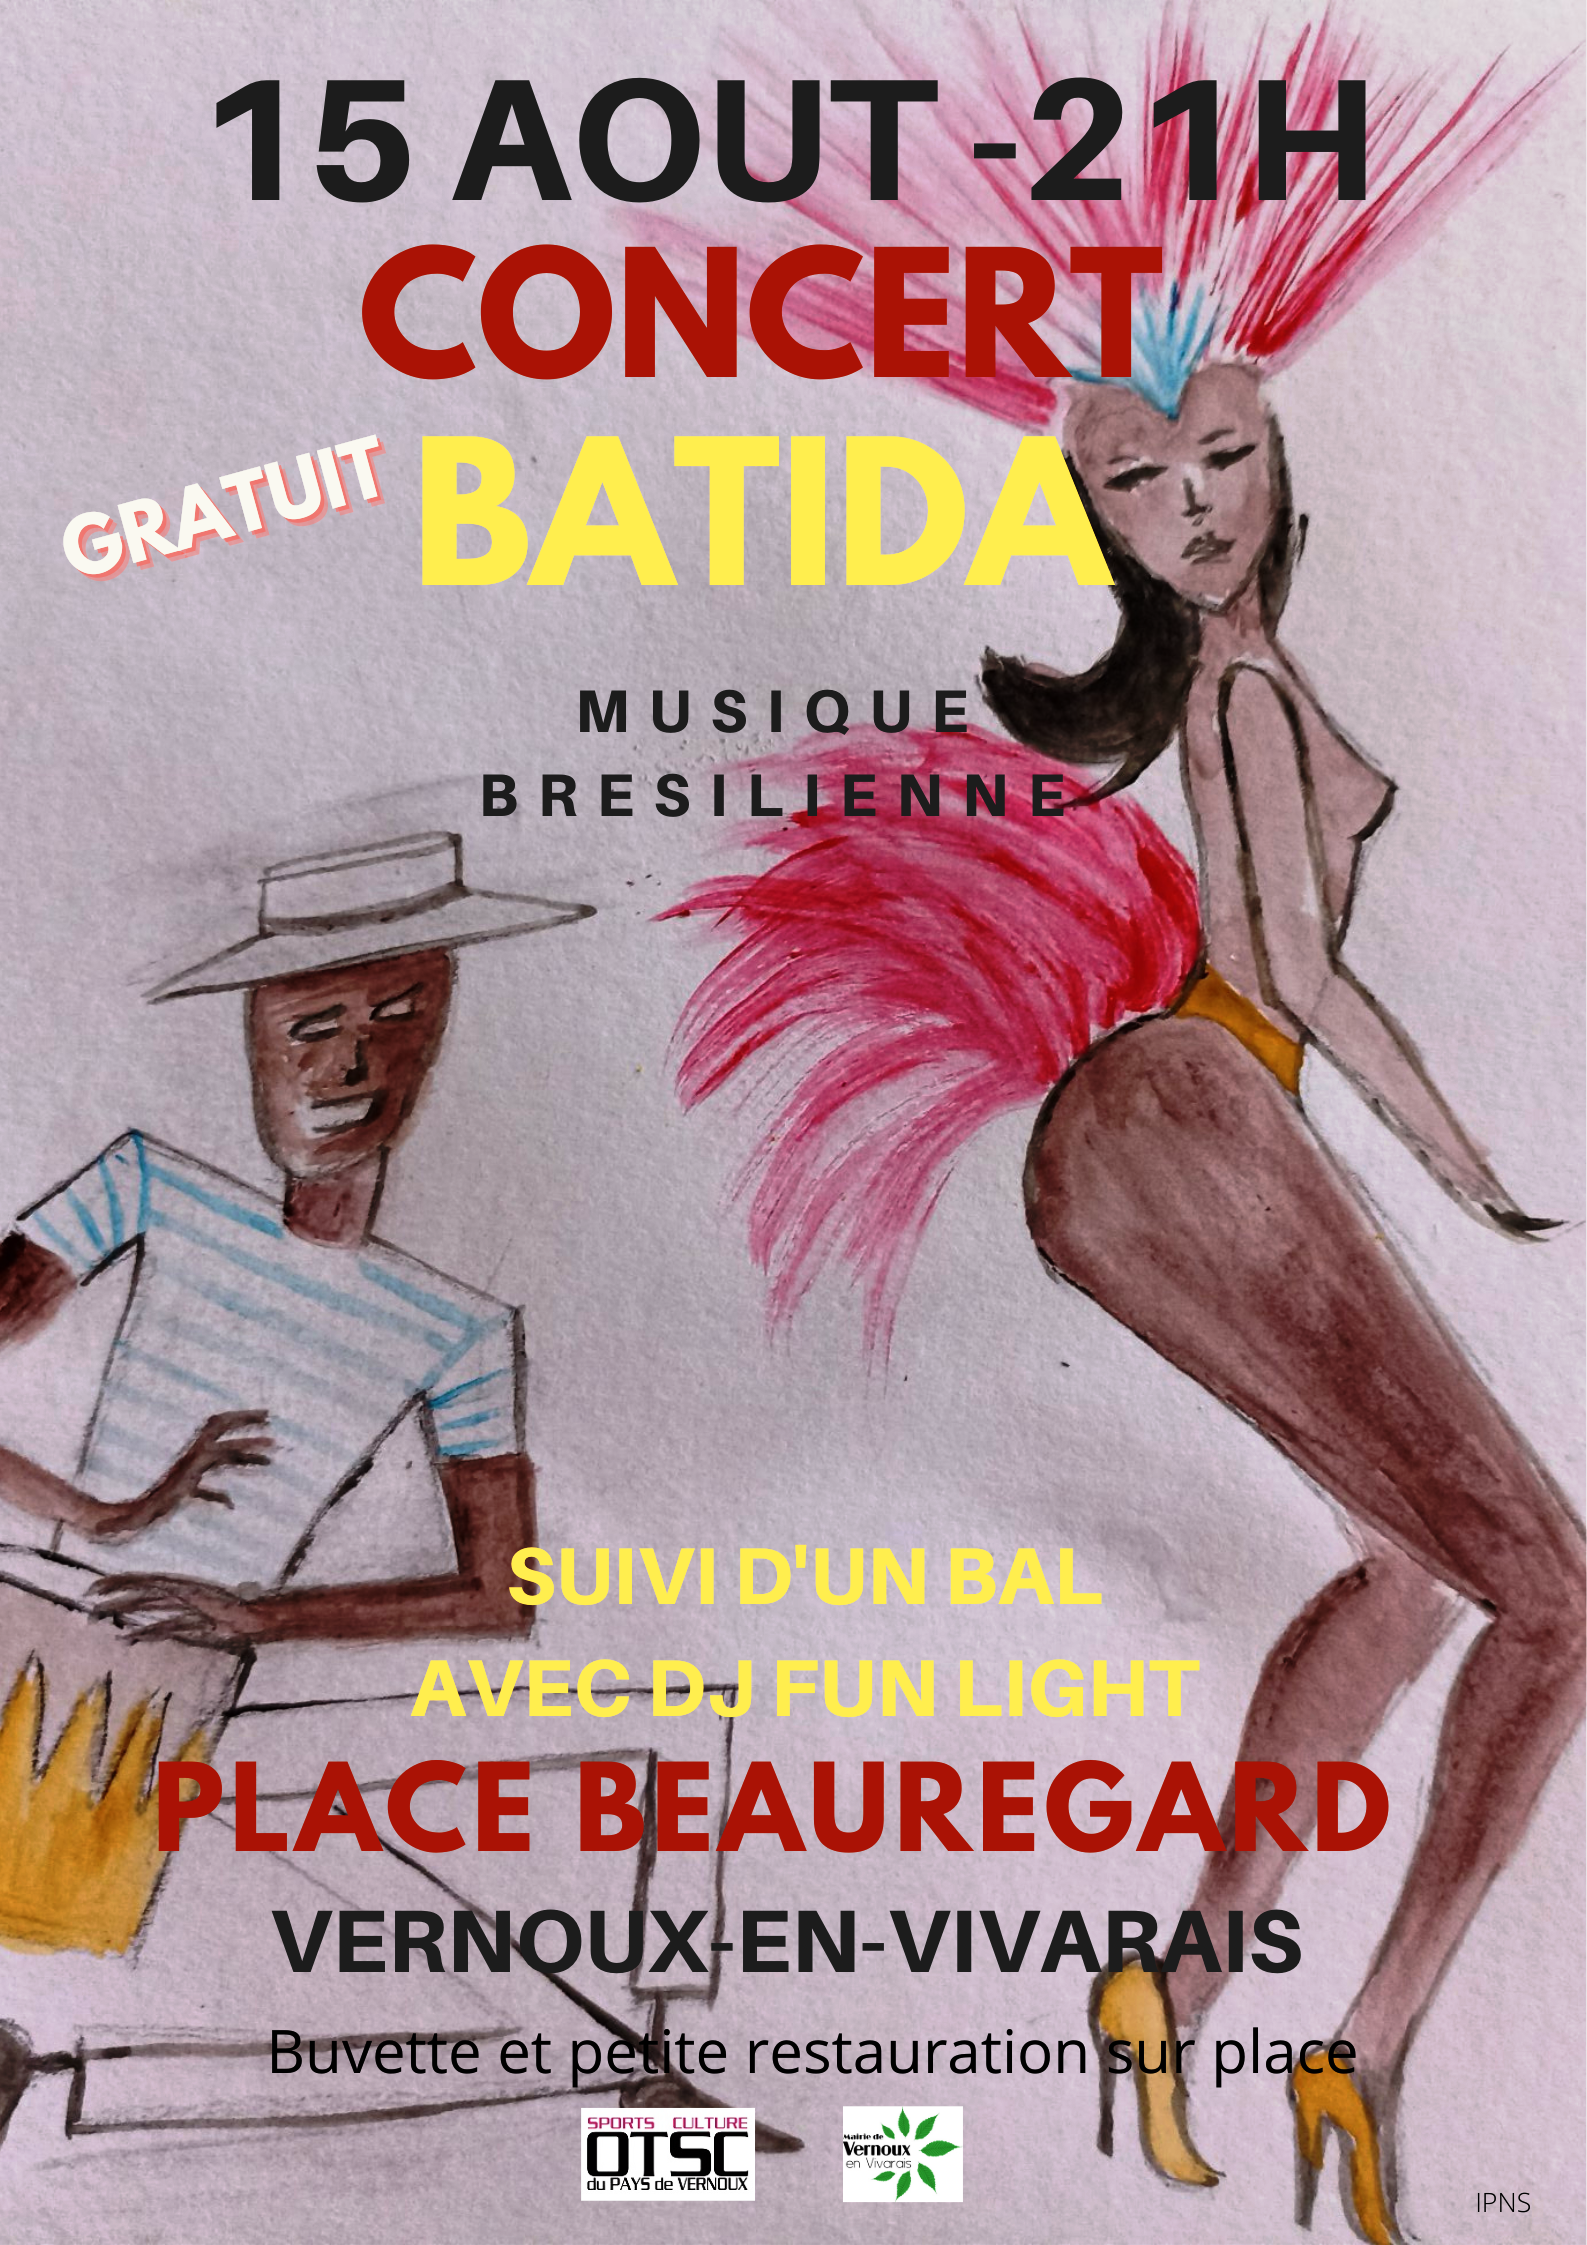 Soirée concert/bal : concert du groupe Batida (musique brésilienne) + bal avec sono DJ Fun Light